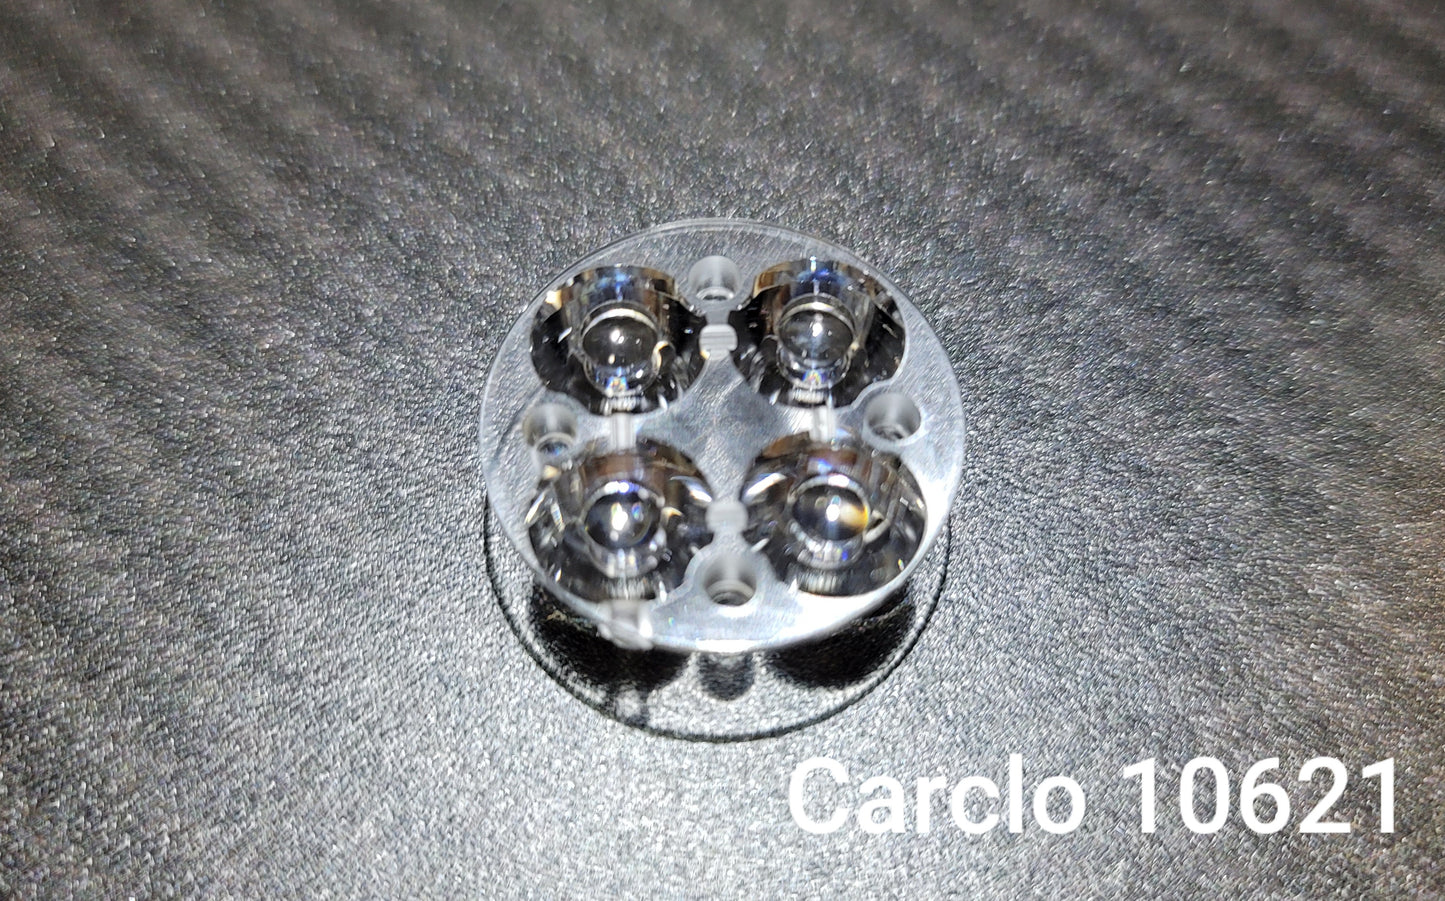 CARCLO 10621 OPTICS PLAIN SPOT FOR EMISAR D4V2 NOCTIGON KR4